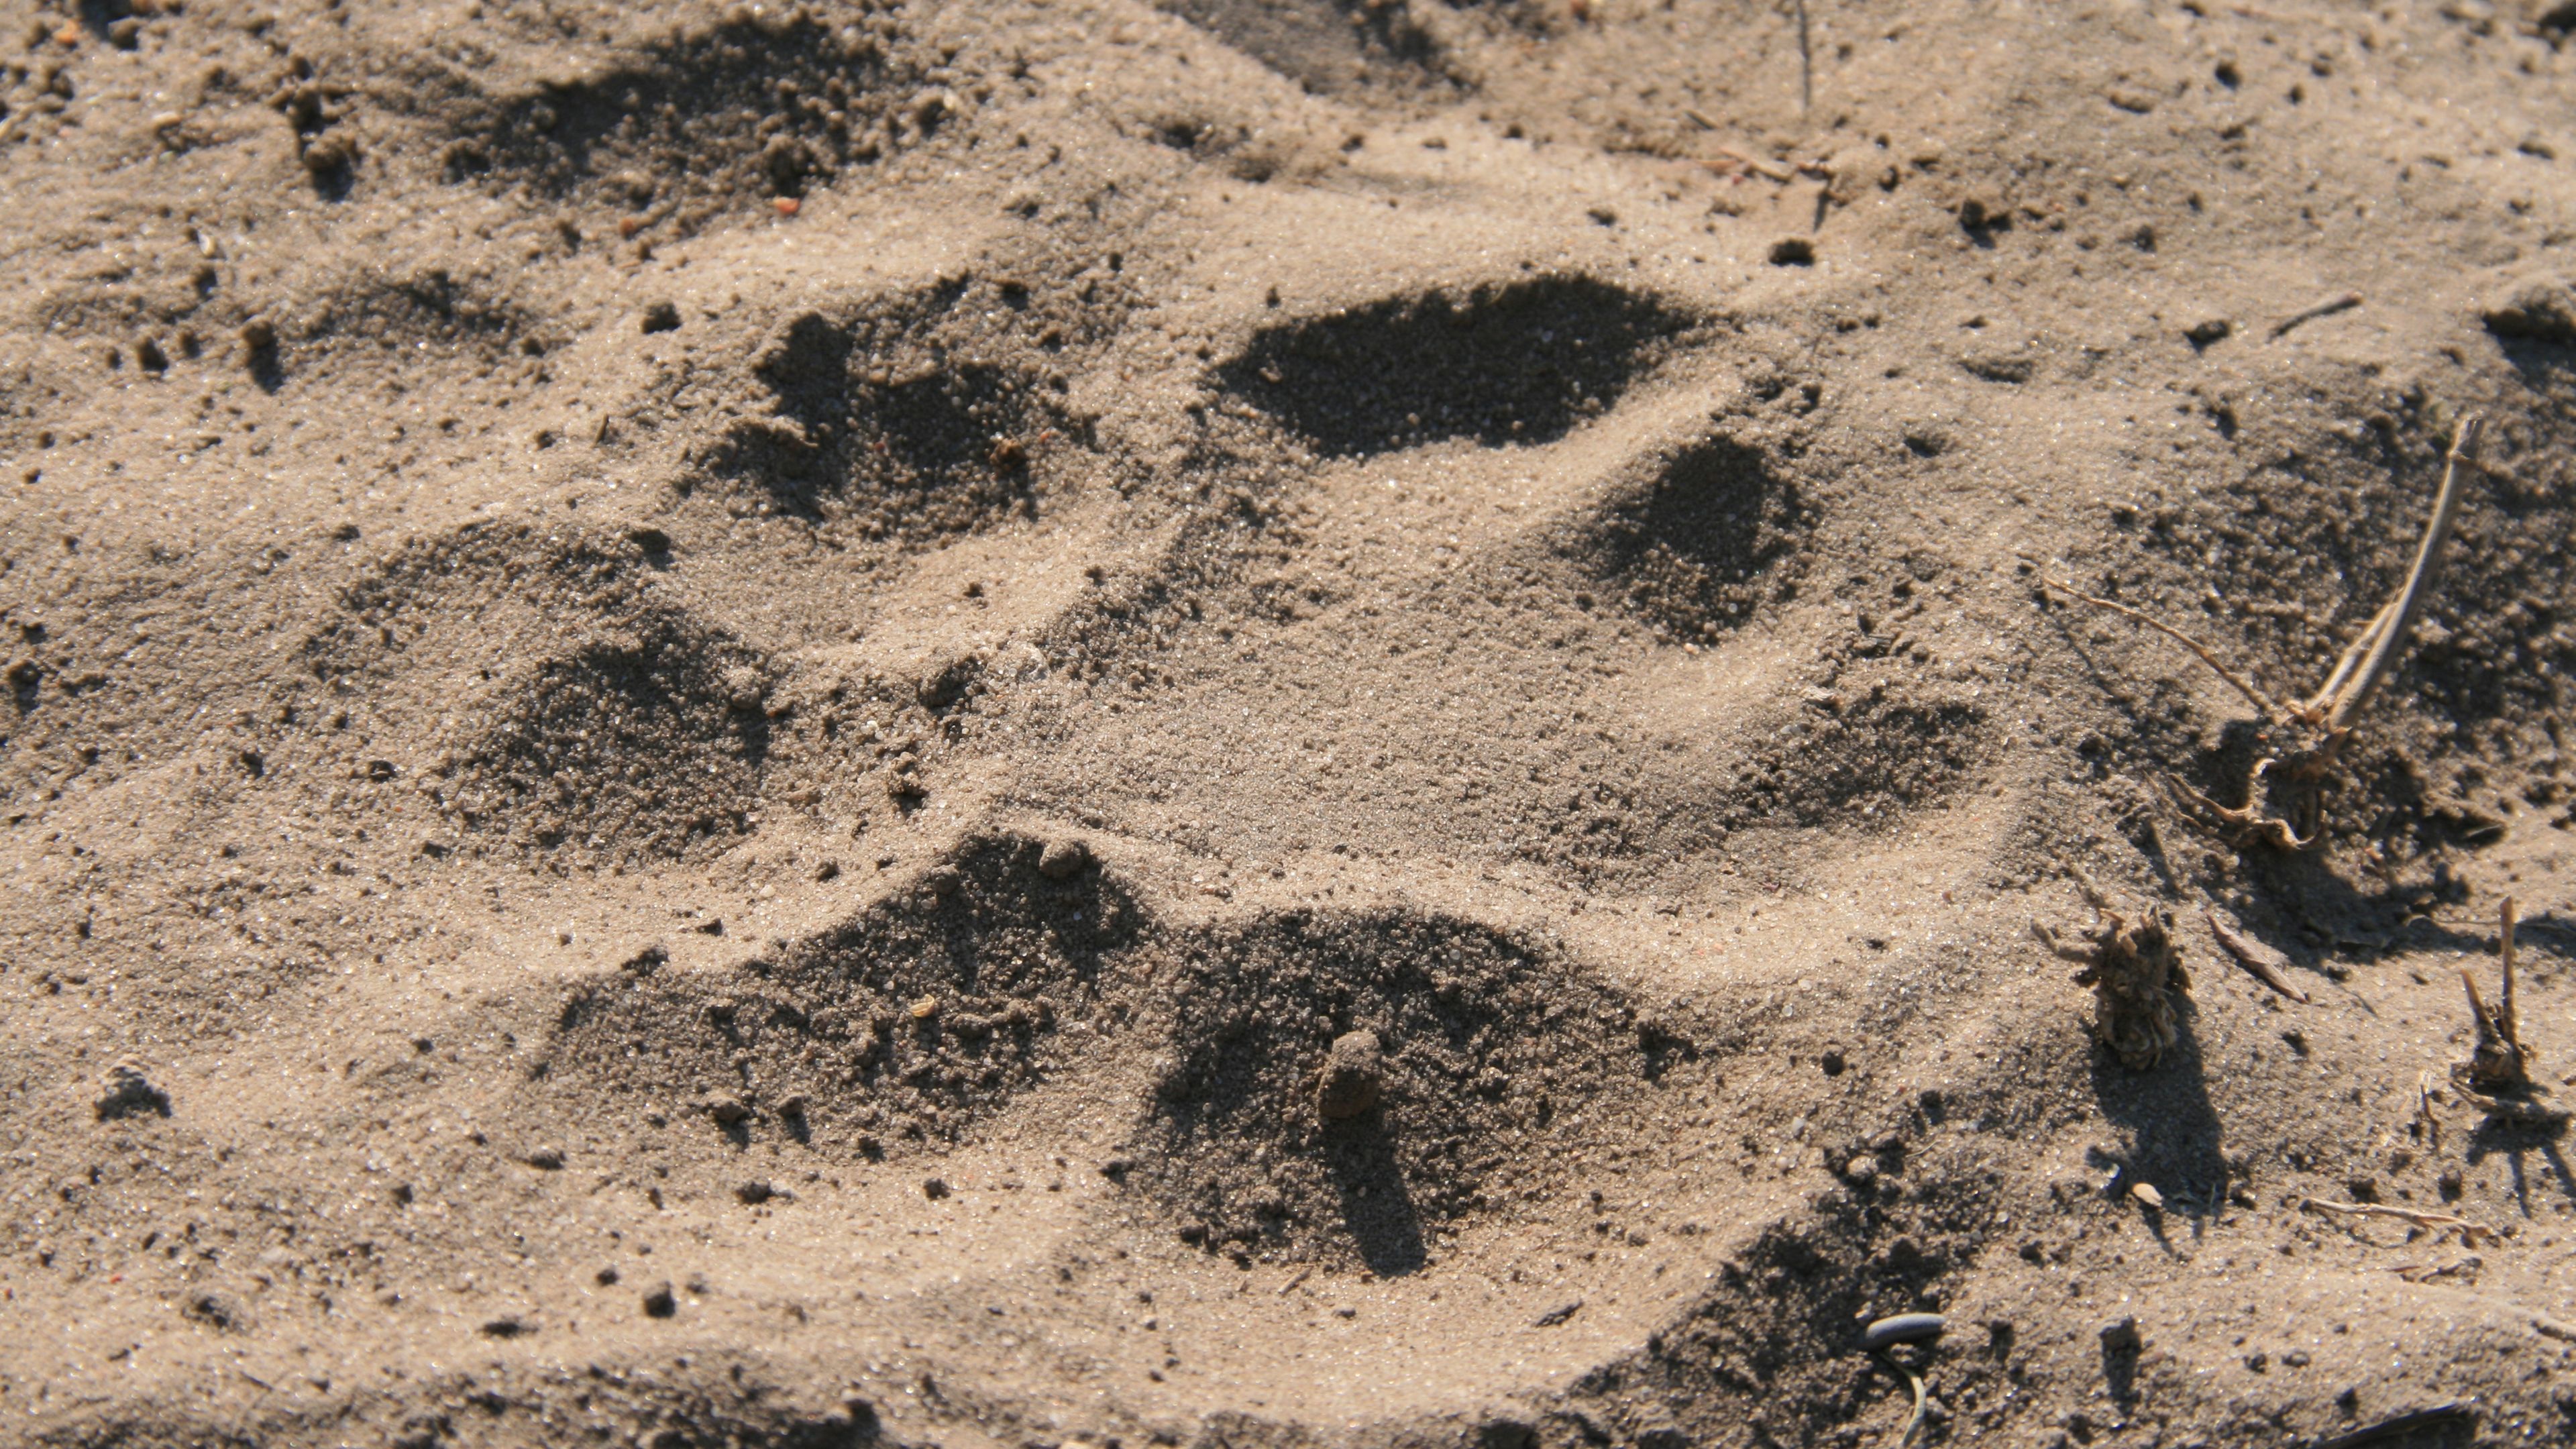 Nahaufnahme eines Pfotenabdrucks im afrikanischen Sand